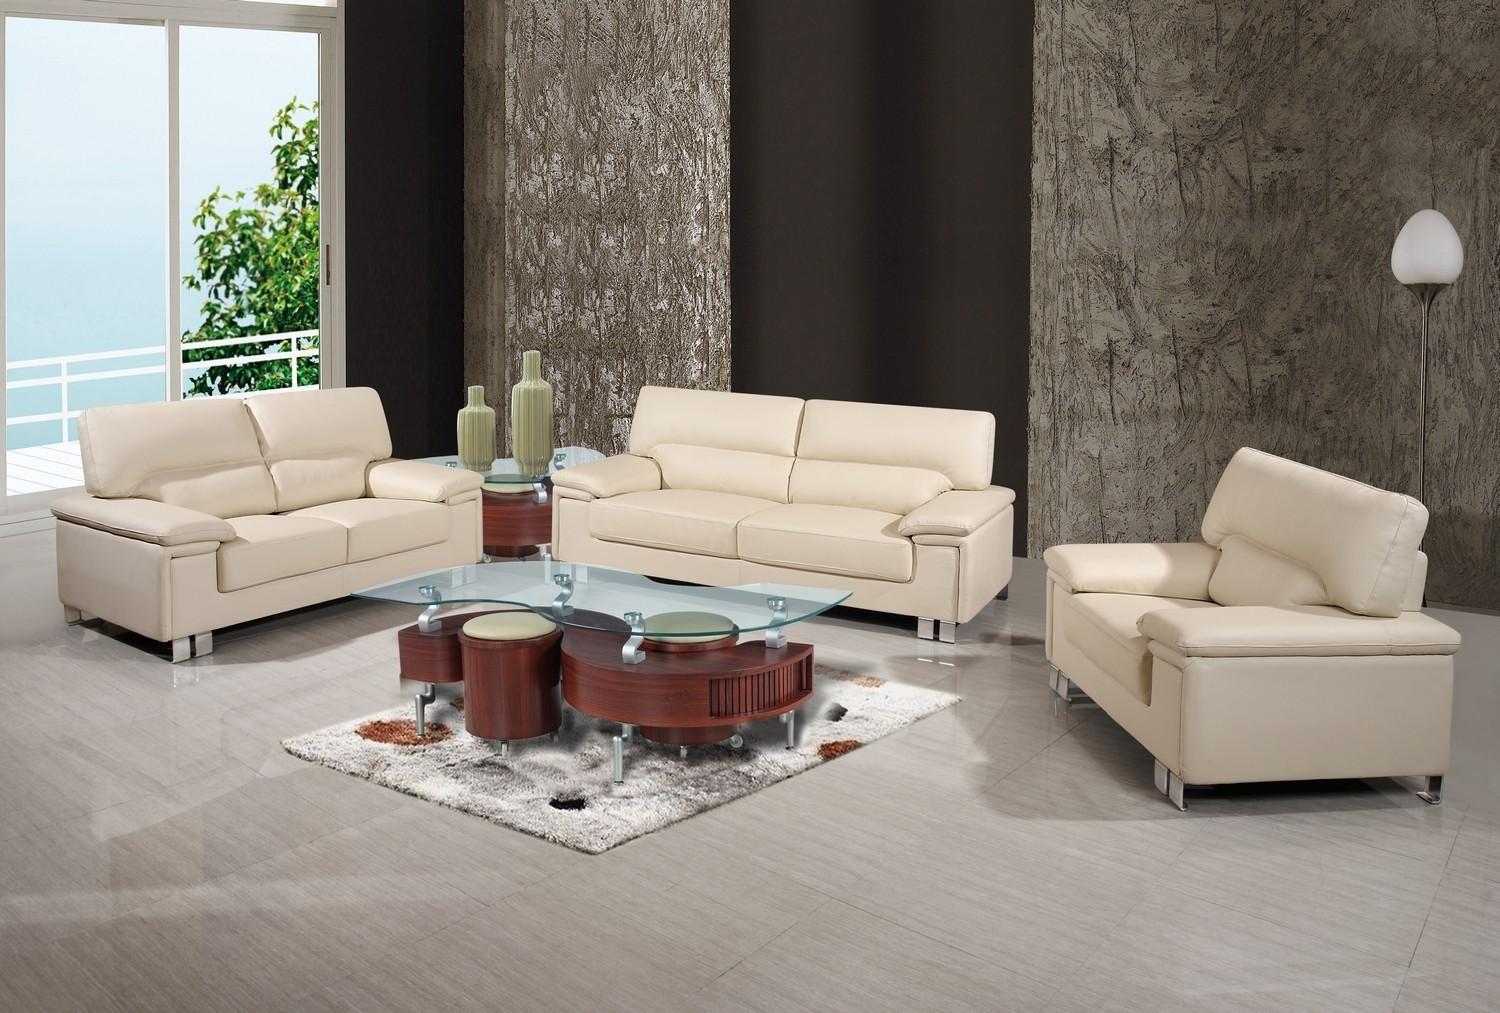 Contemporary Sofa Loveseat and Chair Set U9399-BEIGE U9399-BEIGE-3-PC in Beige Leather Match